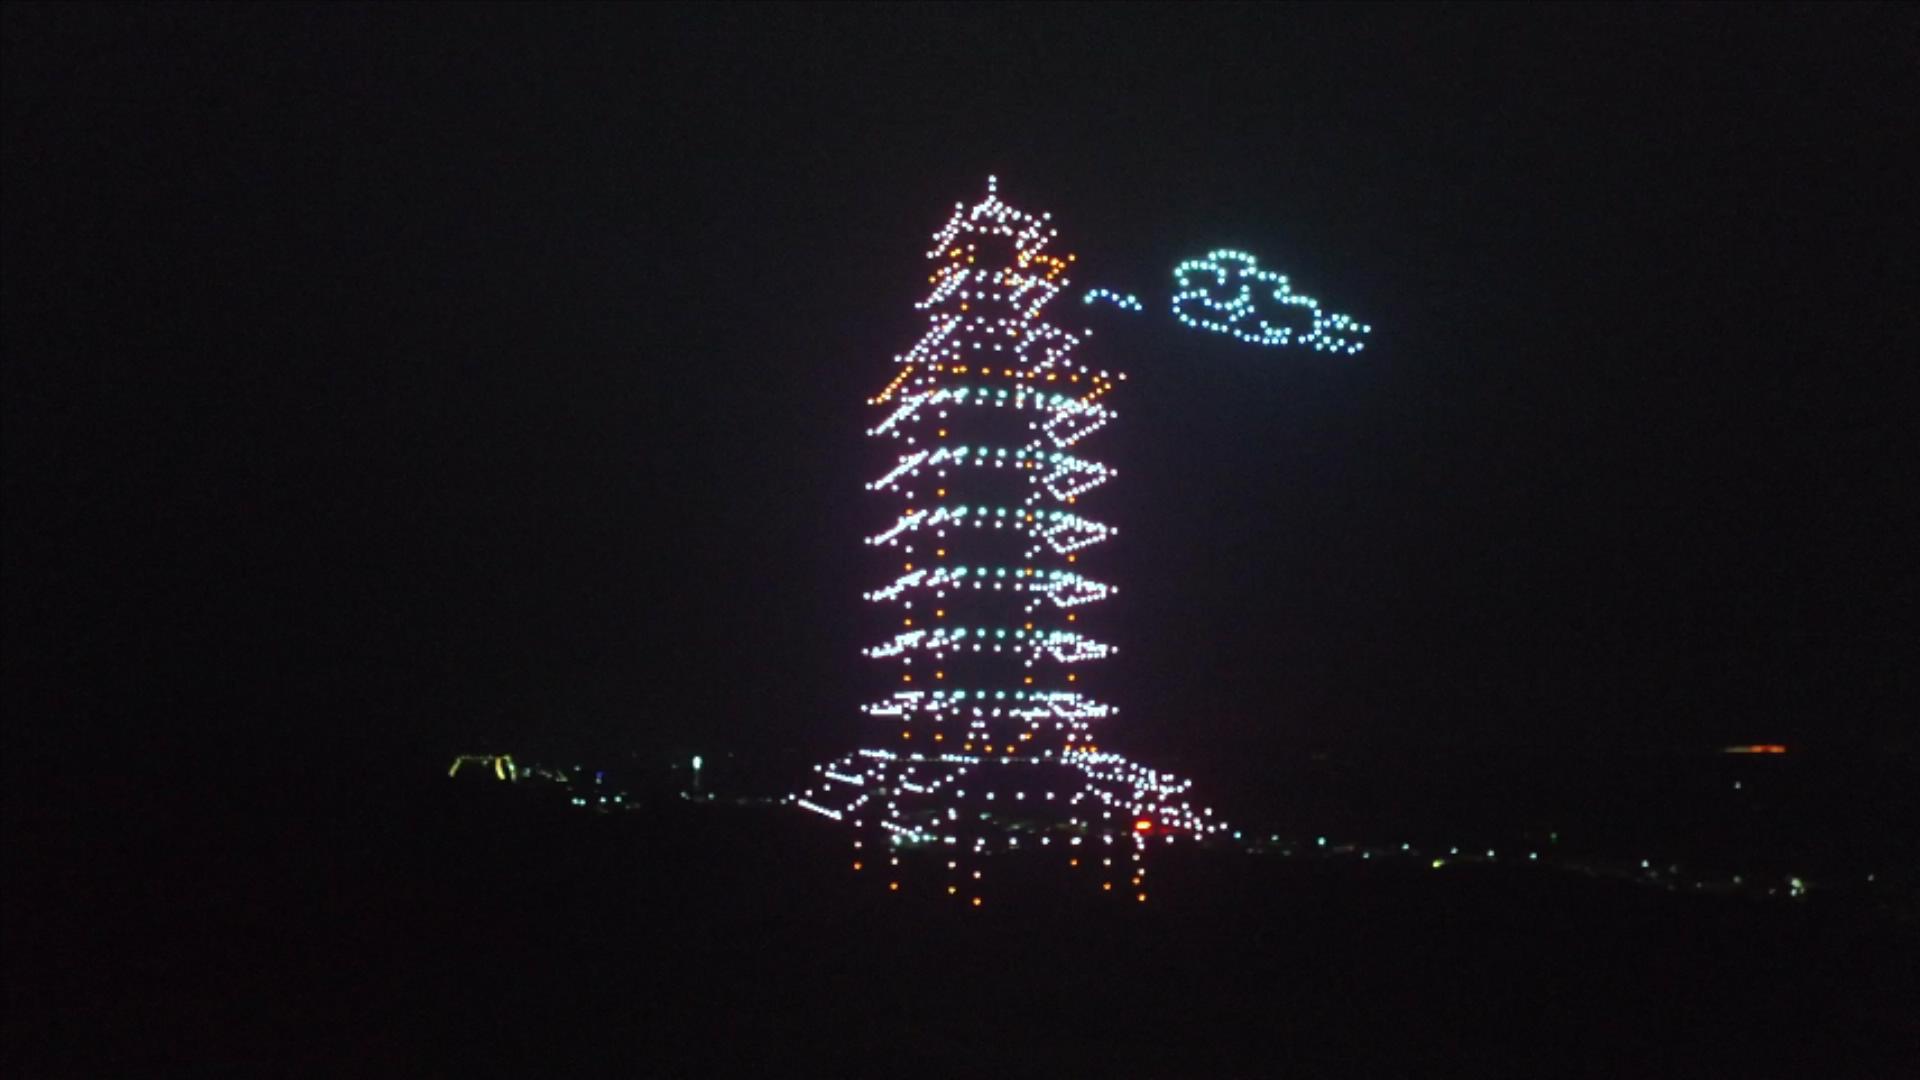 Weishan Lake Lotus Festival drone light show